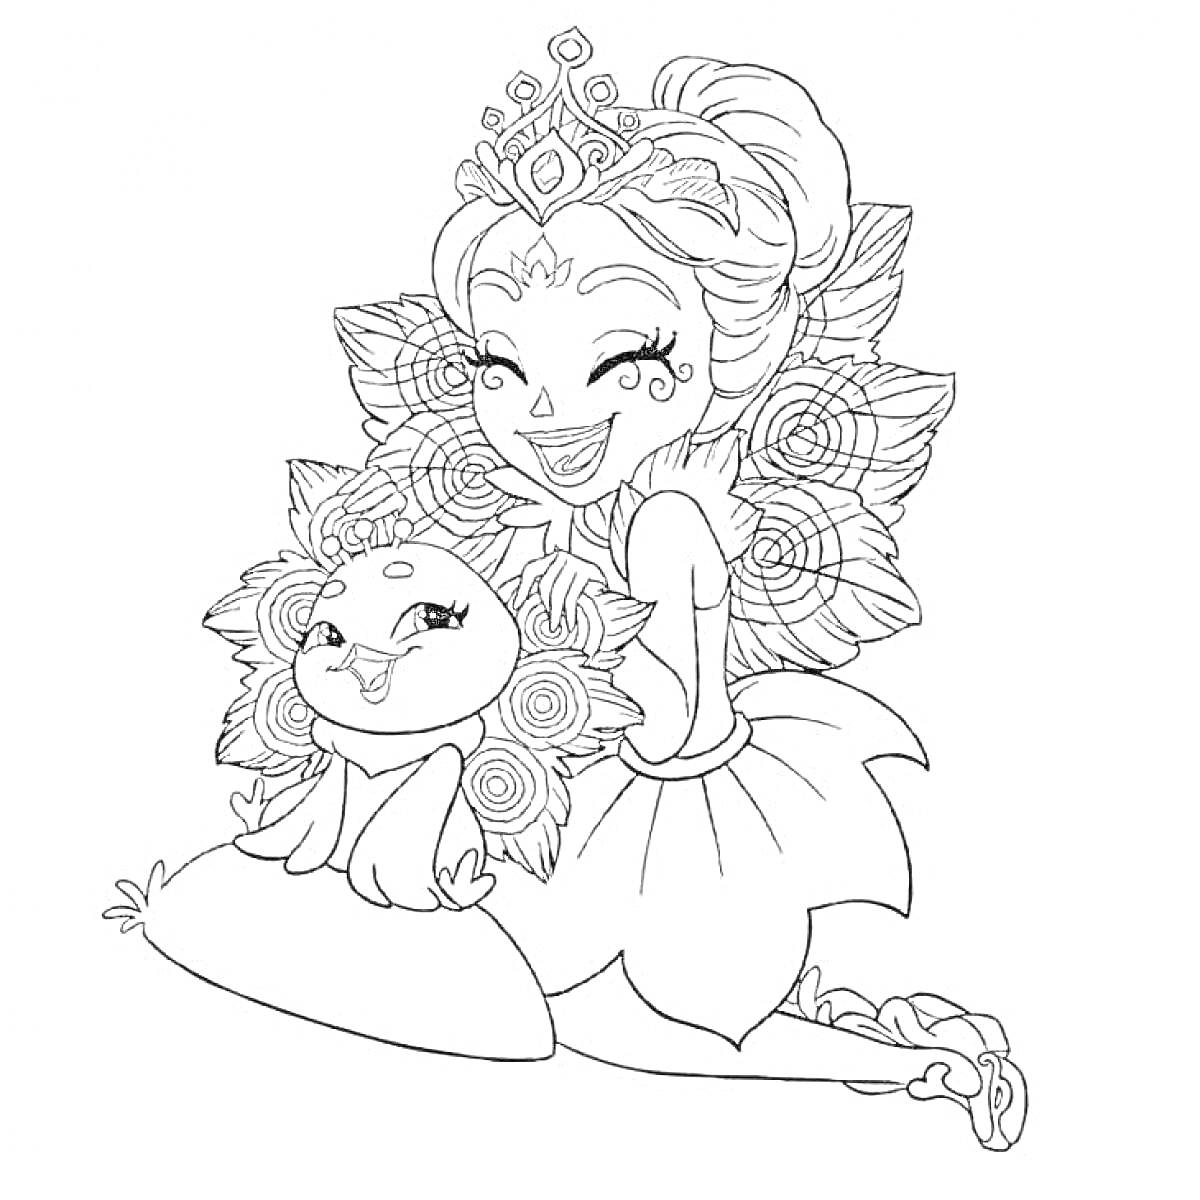 Раскраска Девочка и животное с украшениями в стиле энчантималс, с цветочными элементами на спине